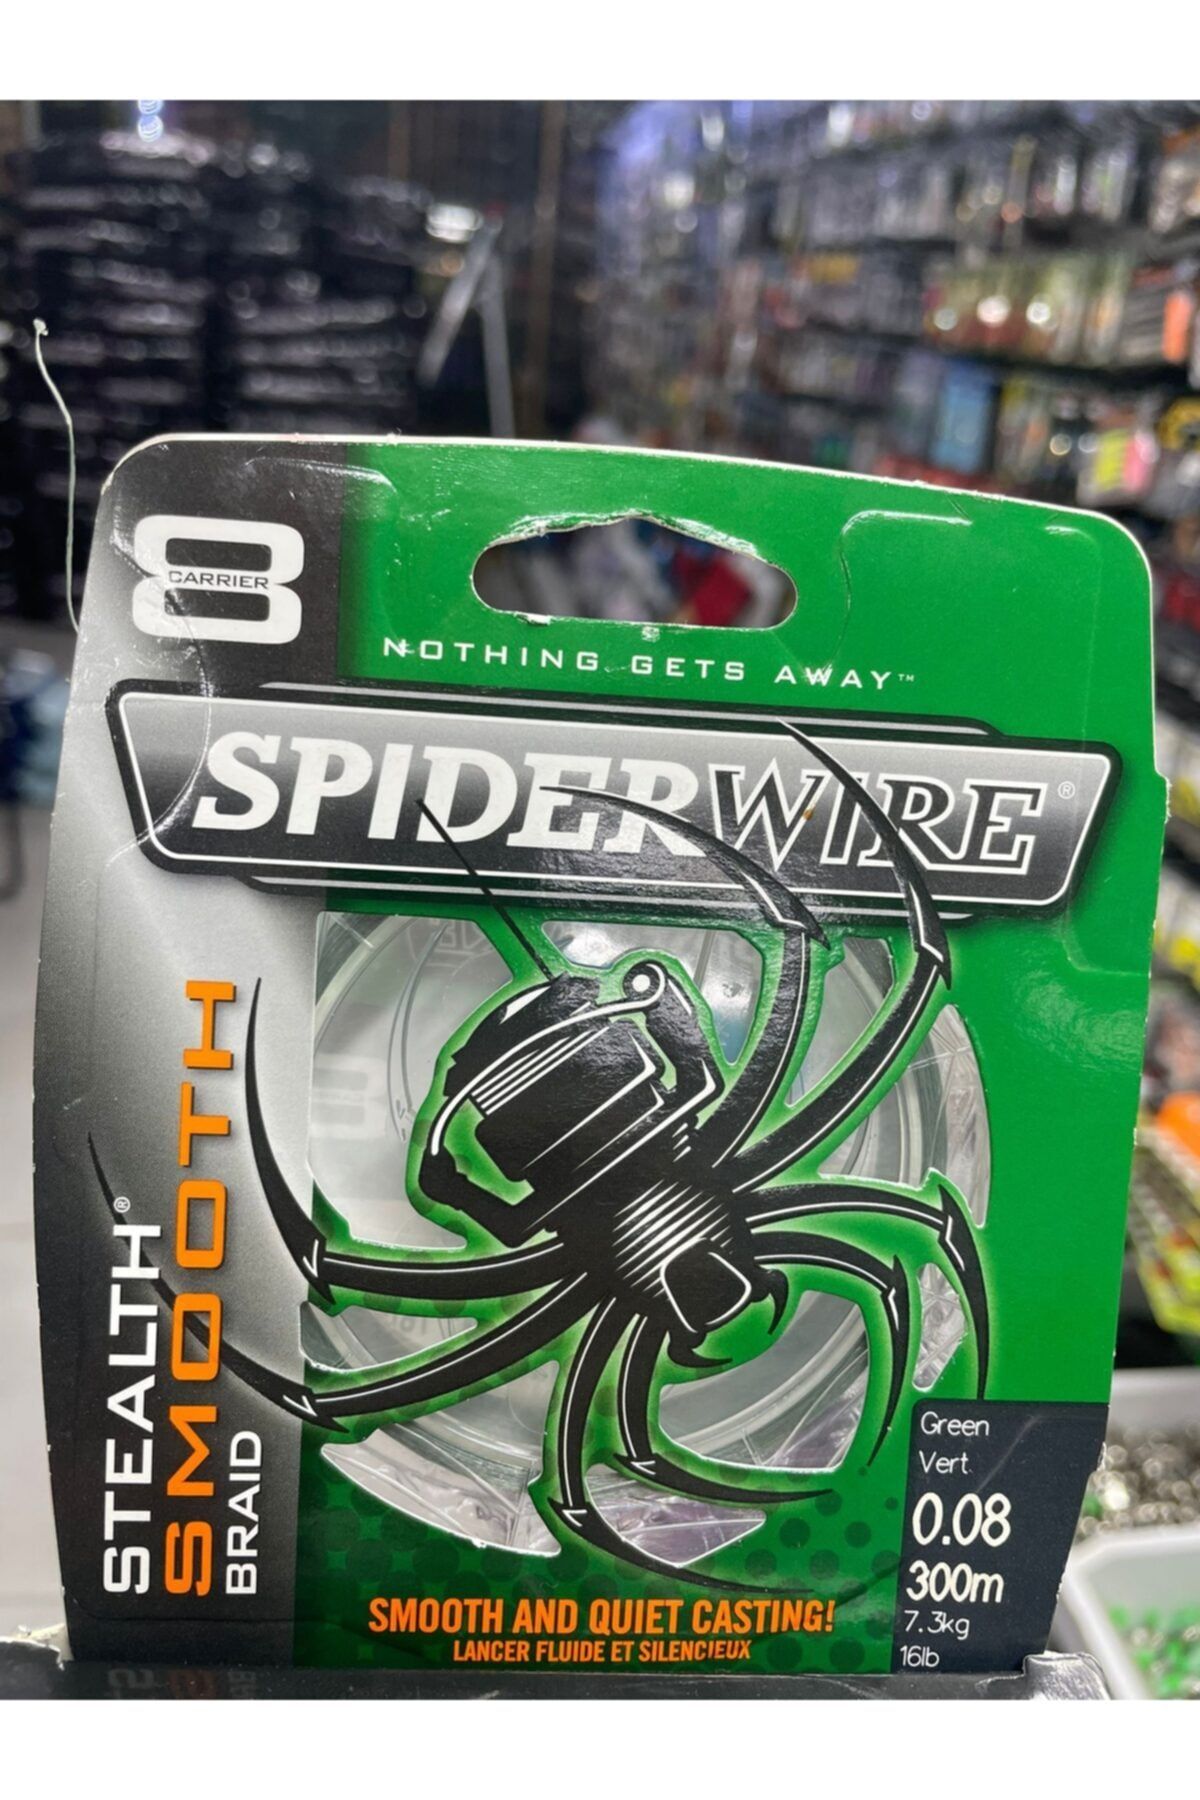 SpiderWire Stealth Braid